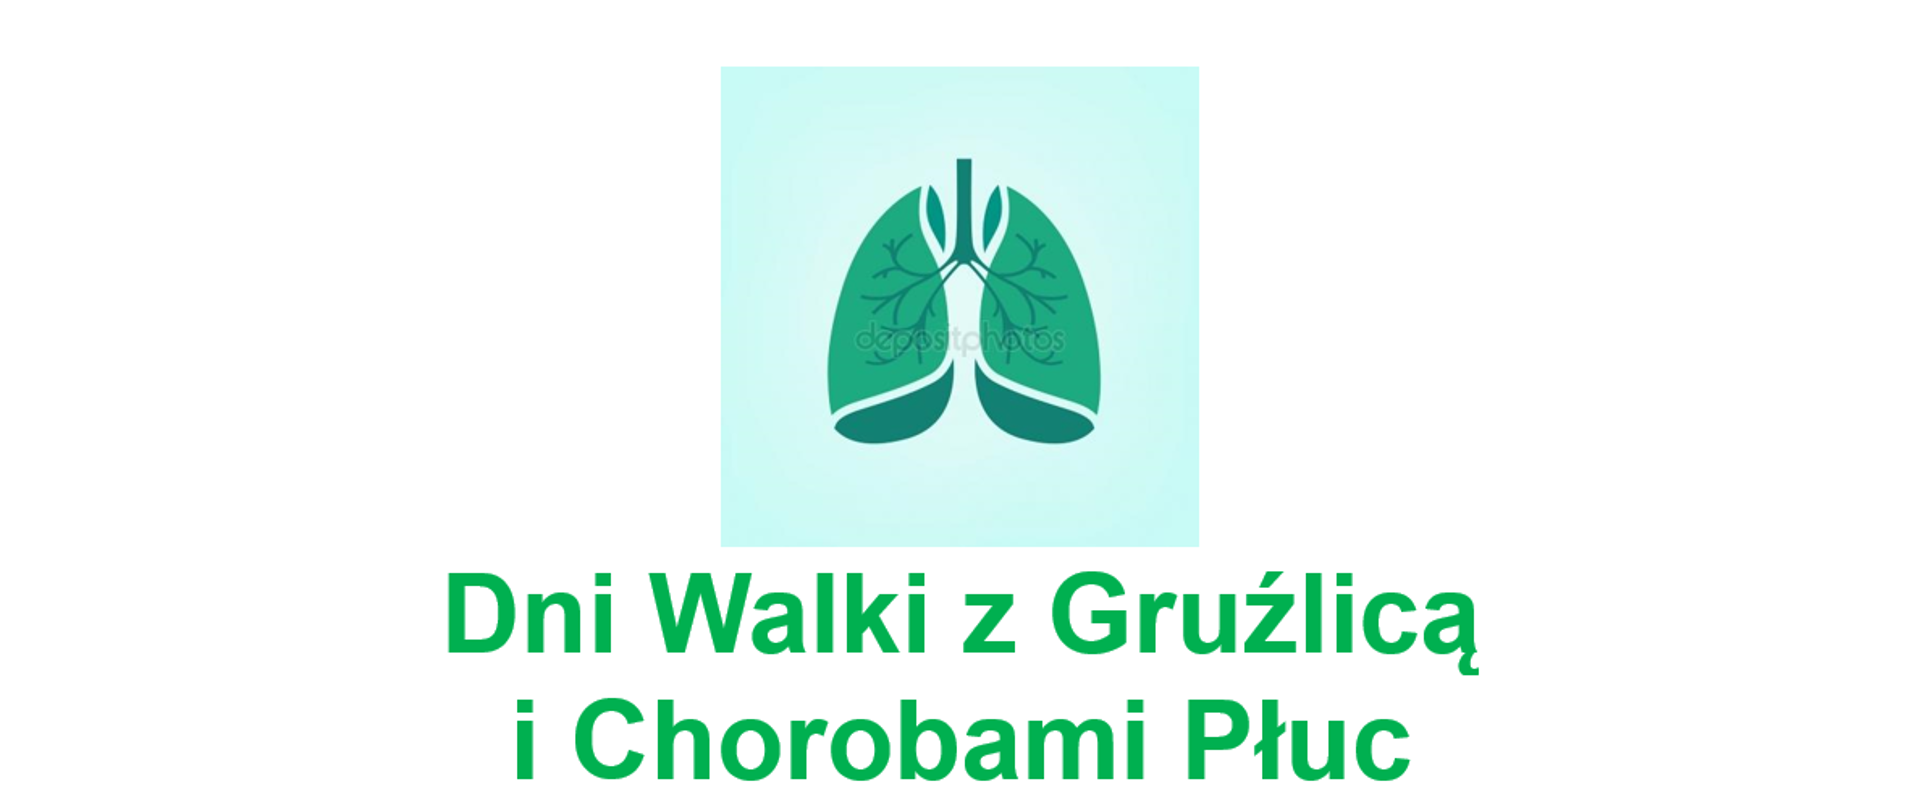 Zielony napisz "Dni Walki z Gruźlicą i Chorobami Płuc" oraz grafika płuc człowieka